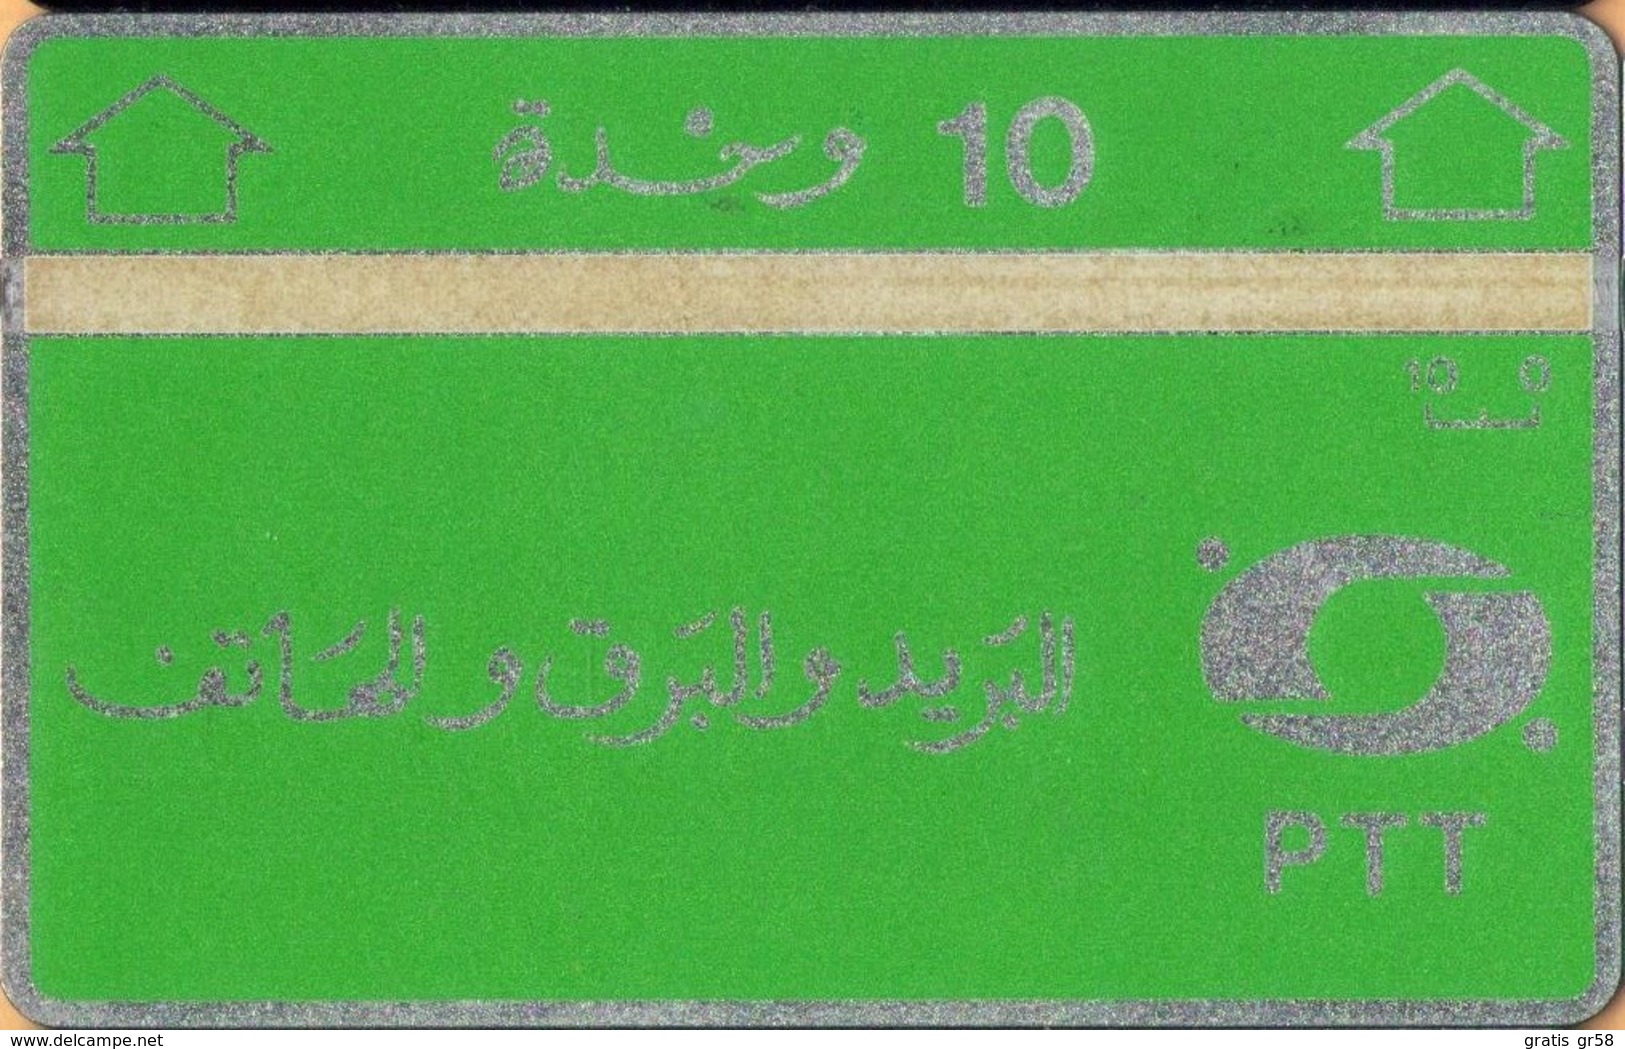 Algeria -ALG-PT-03, L&G, Green & Silver, 4Mm Band, 706B, 10U, 60,000ex, 1987, Mint - Algérie